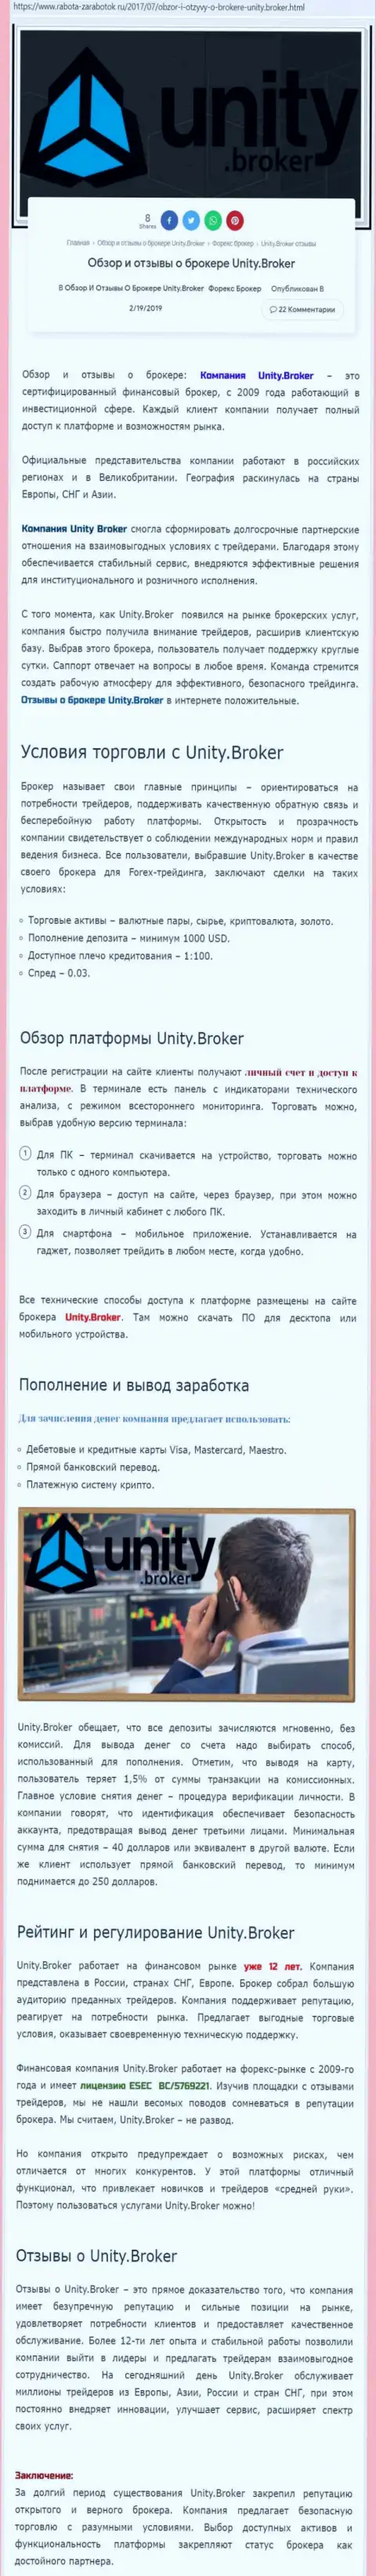 Обзорная инфа forex дилинговой компании Unity Broker на сайте rabota-zarabotok ru